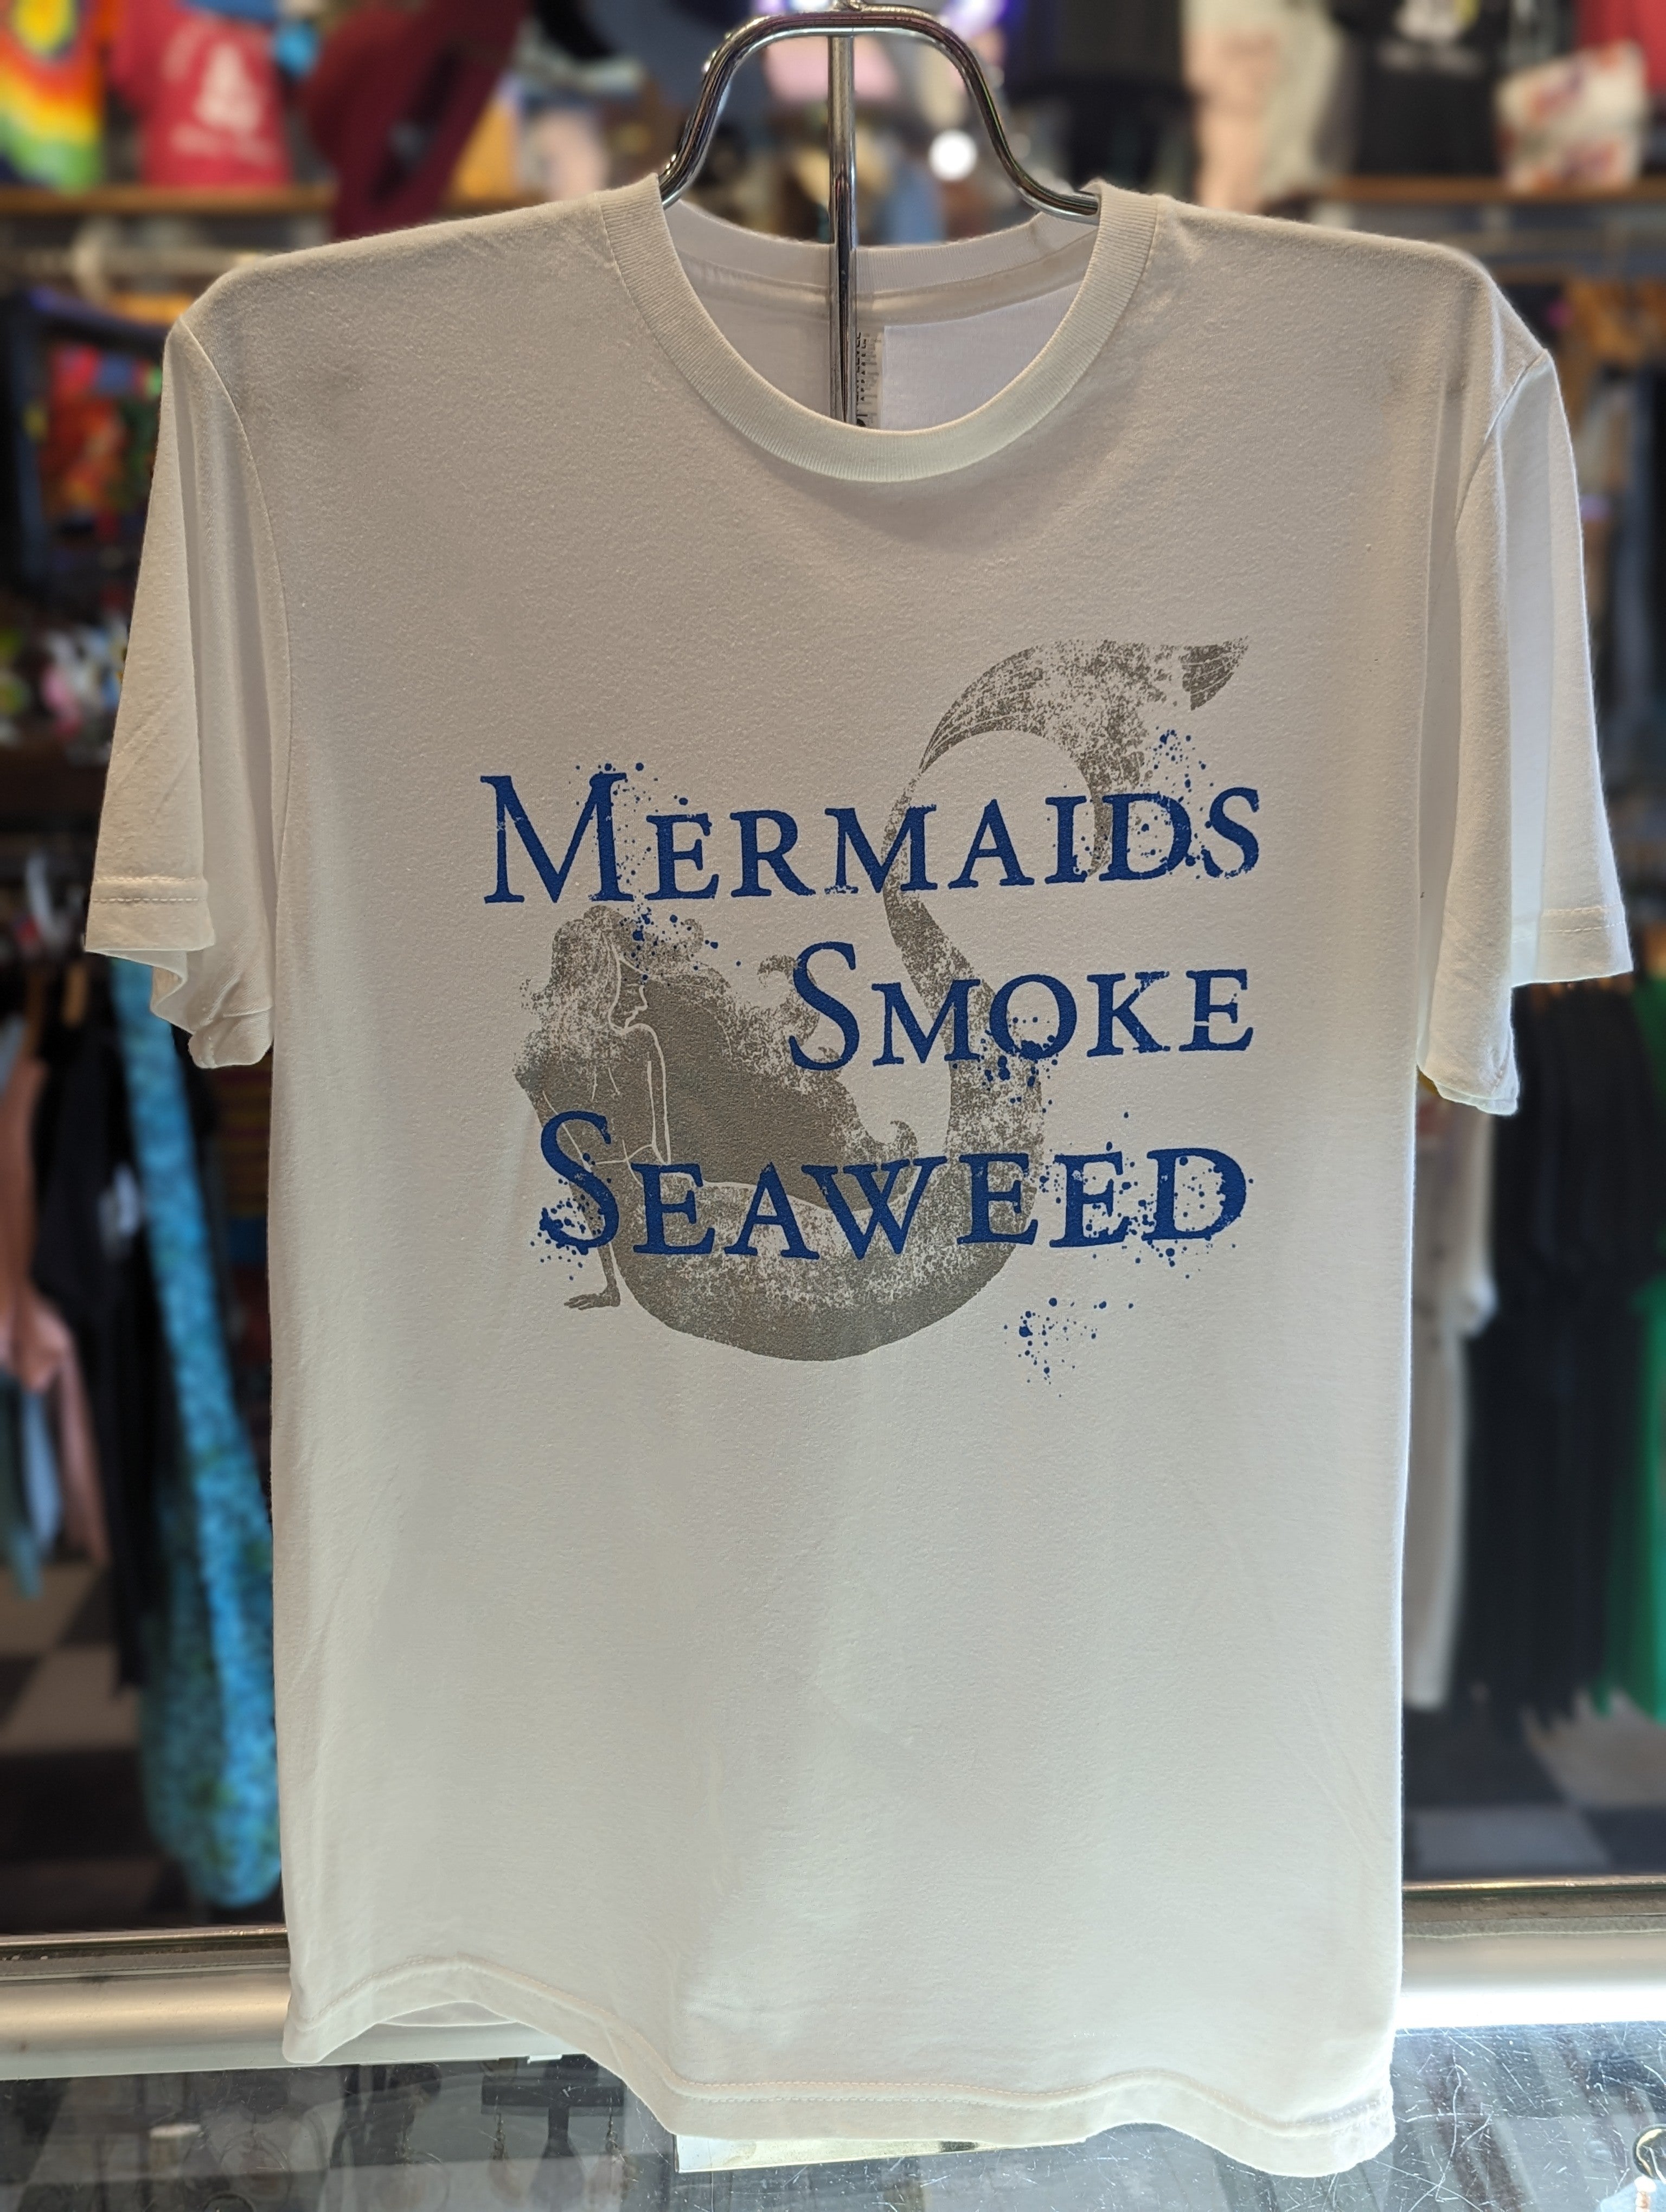 Men's "Mermaids Smoke Seaweed" Tee